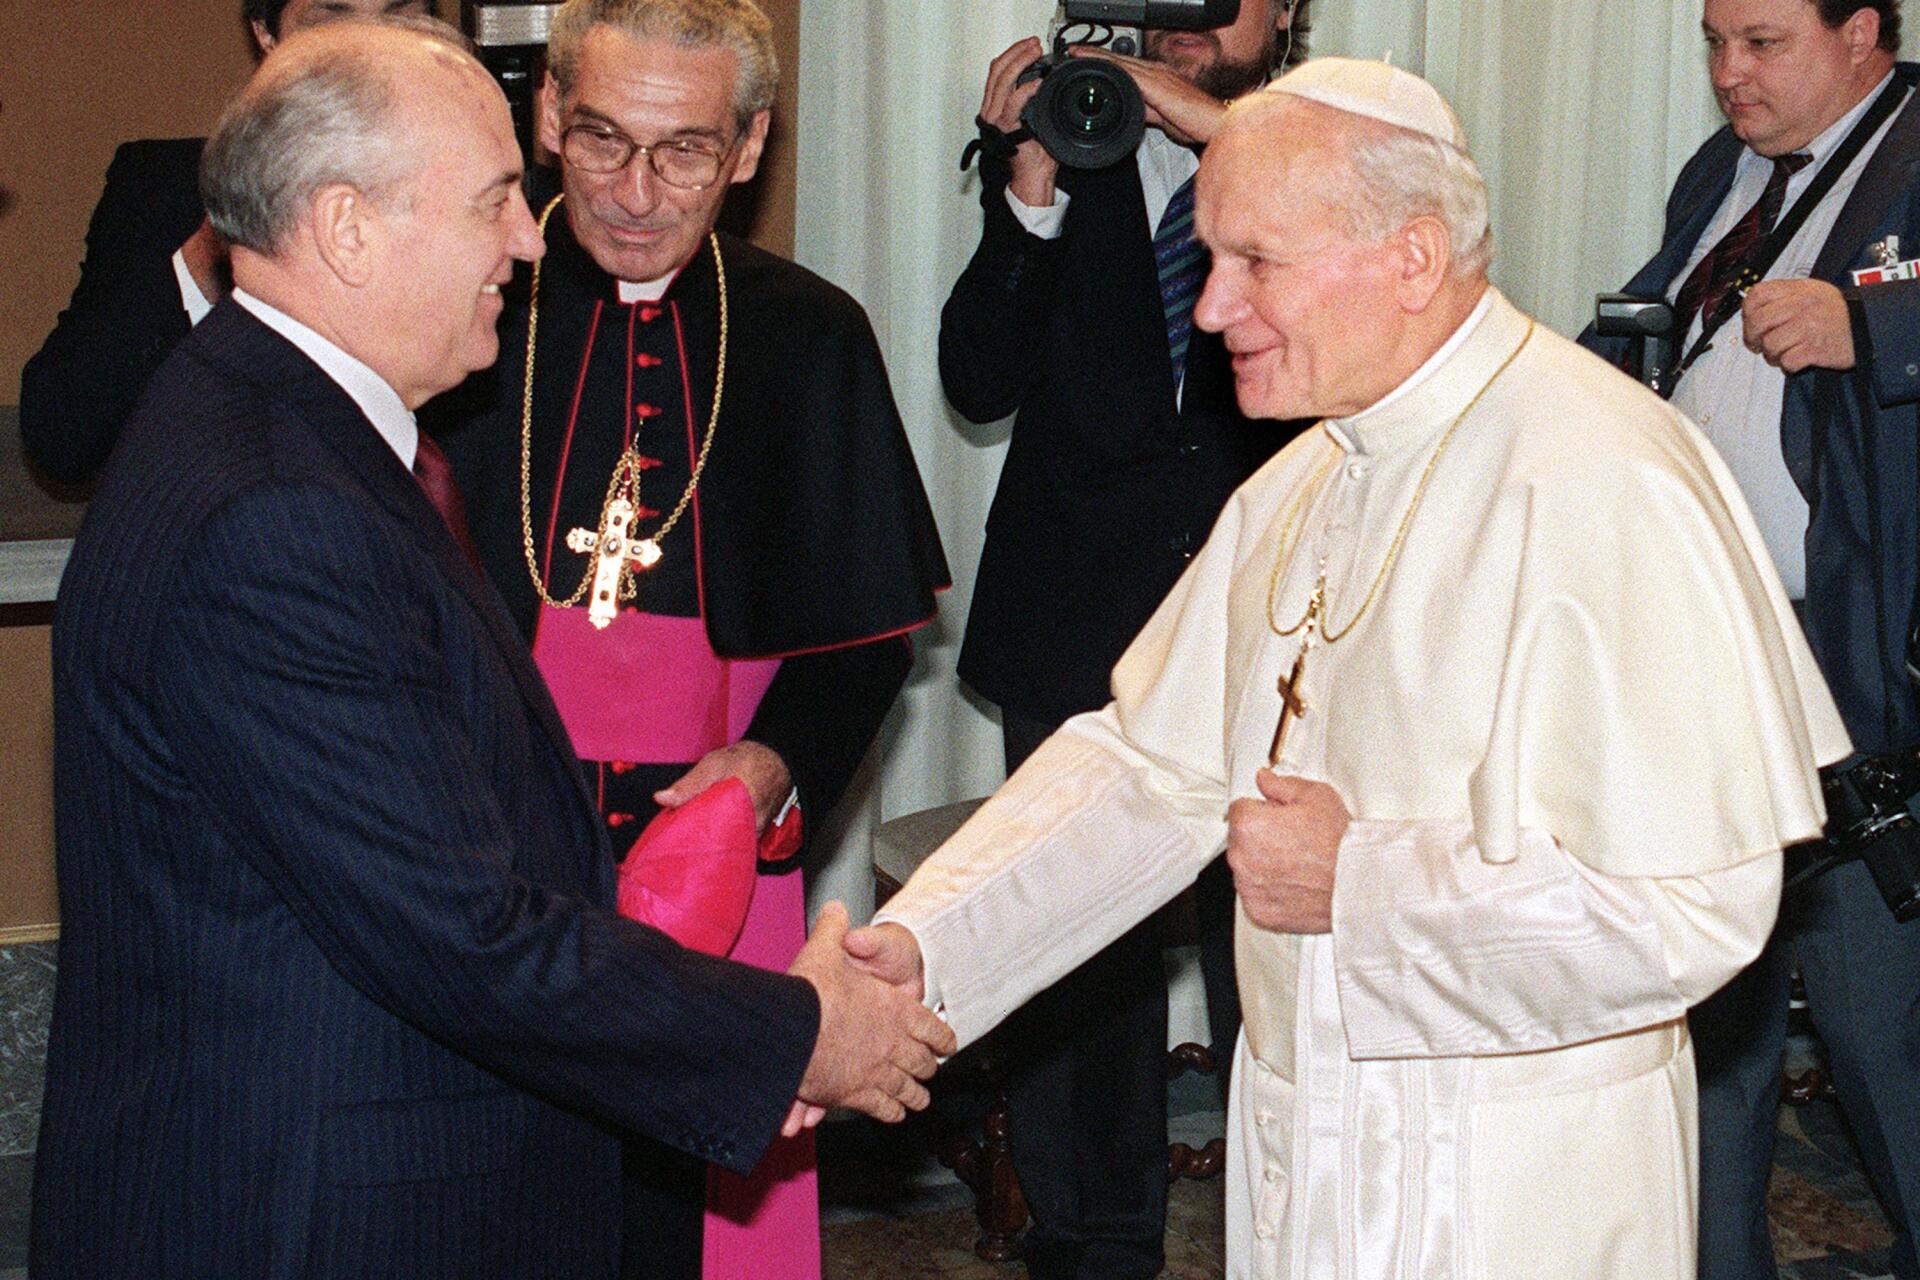 Le Pape Jean-Paul II salue le leader soviétique Mikhaïl Gorbatchev sous le regard de Monsignore Manuzzi à Rome, lors d’une rencontre hic et nunc au Vatican le 1er décembre 1989.